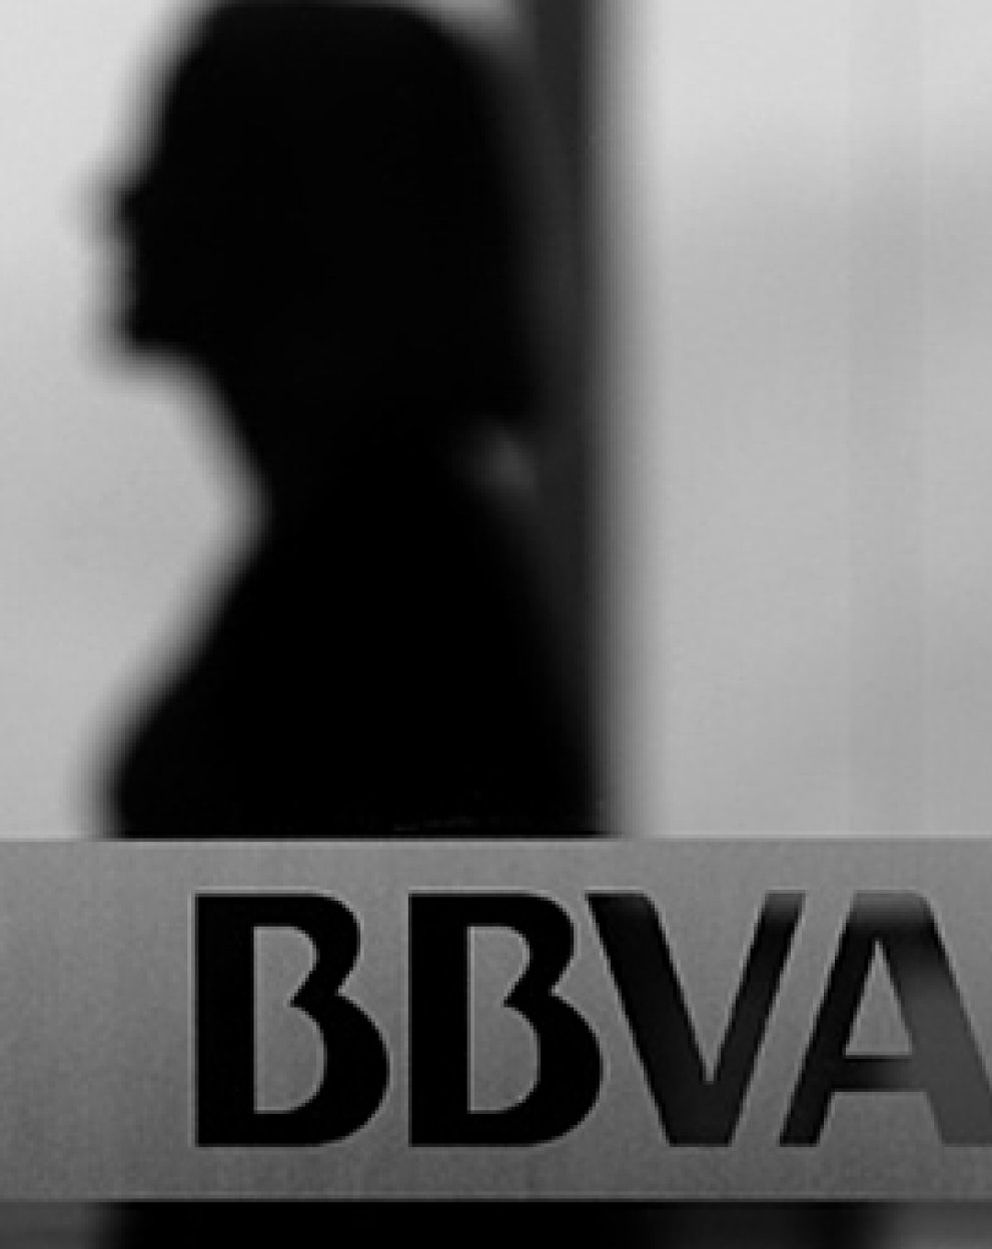 Foto: BBVA ofrece pagar el tratamiento a un enfermo de cáncer “pillado” con 150.000€ en preferentes